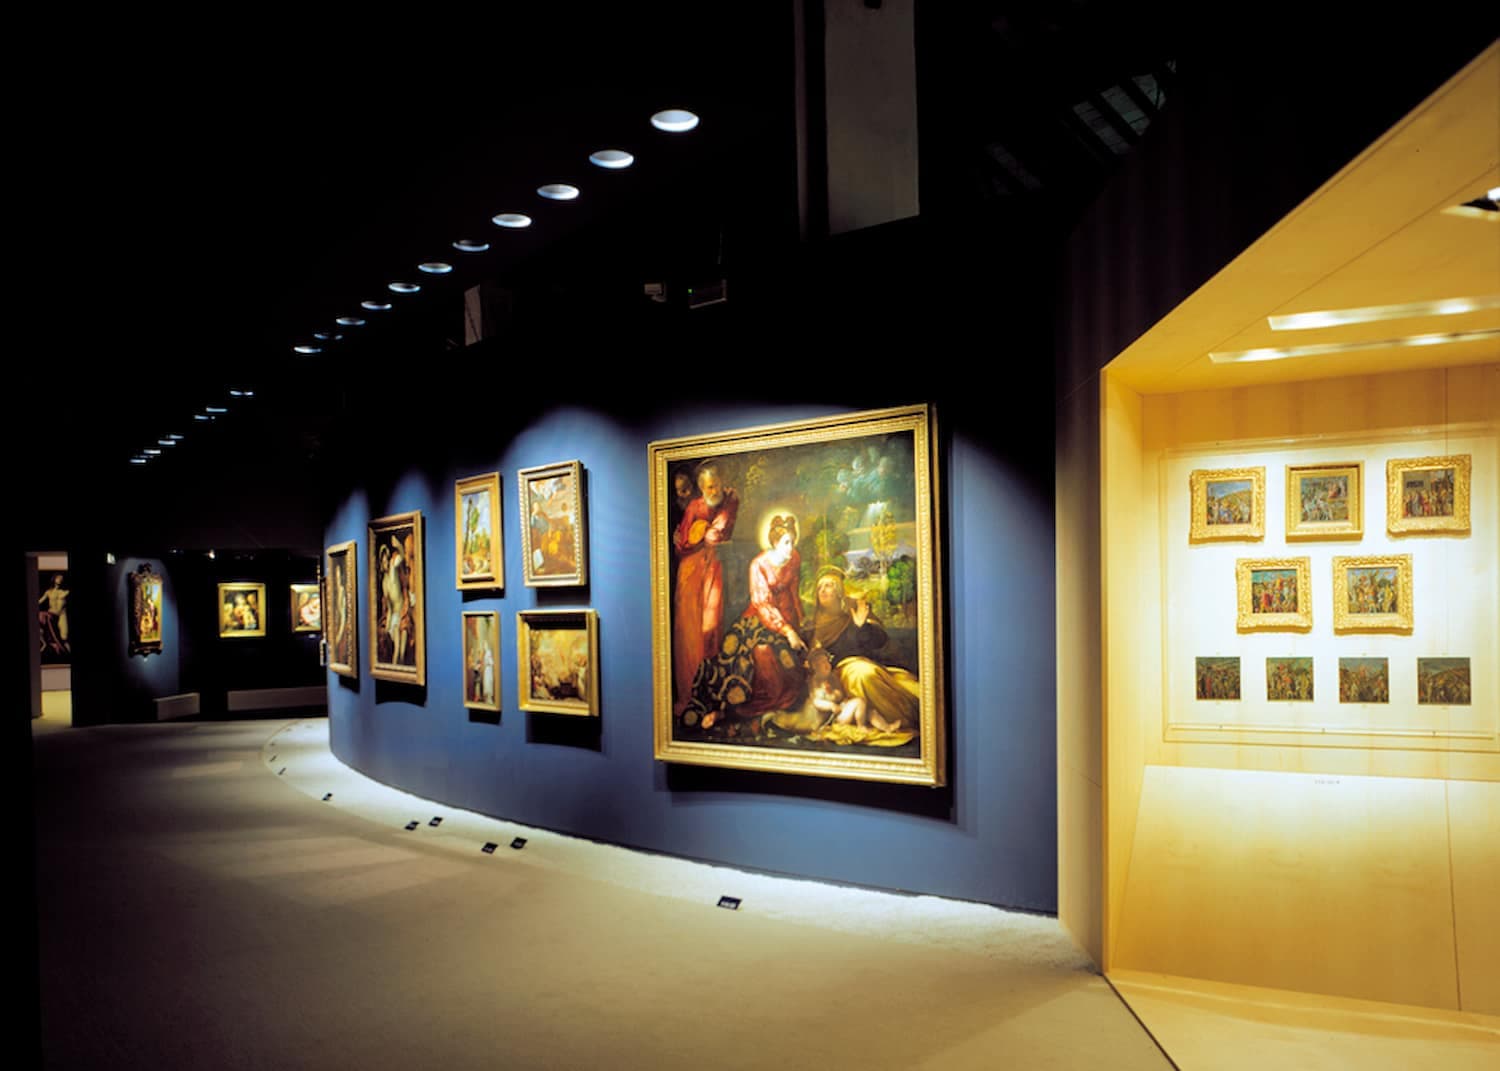 Interior Design, Exhibitions
